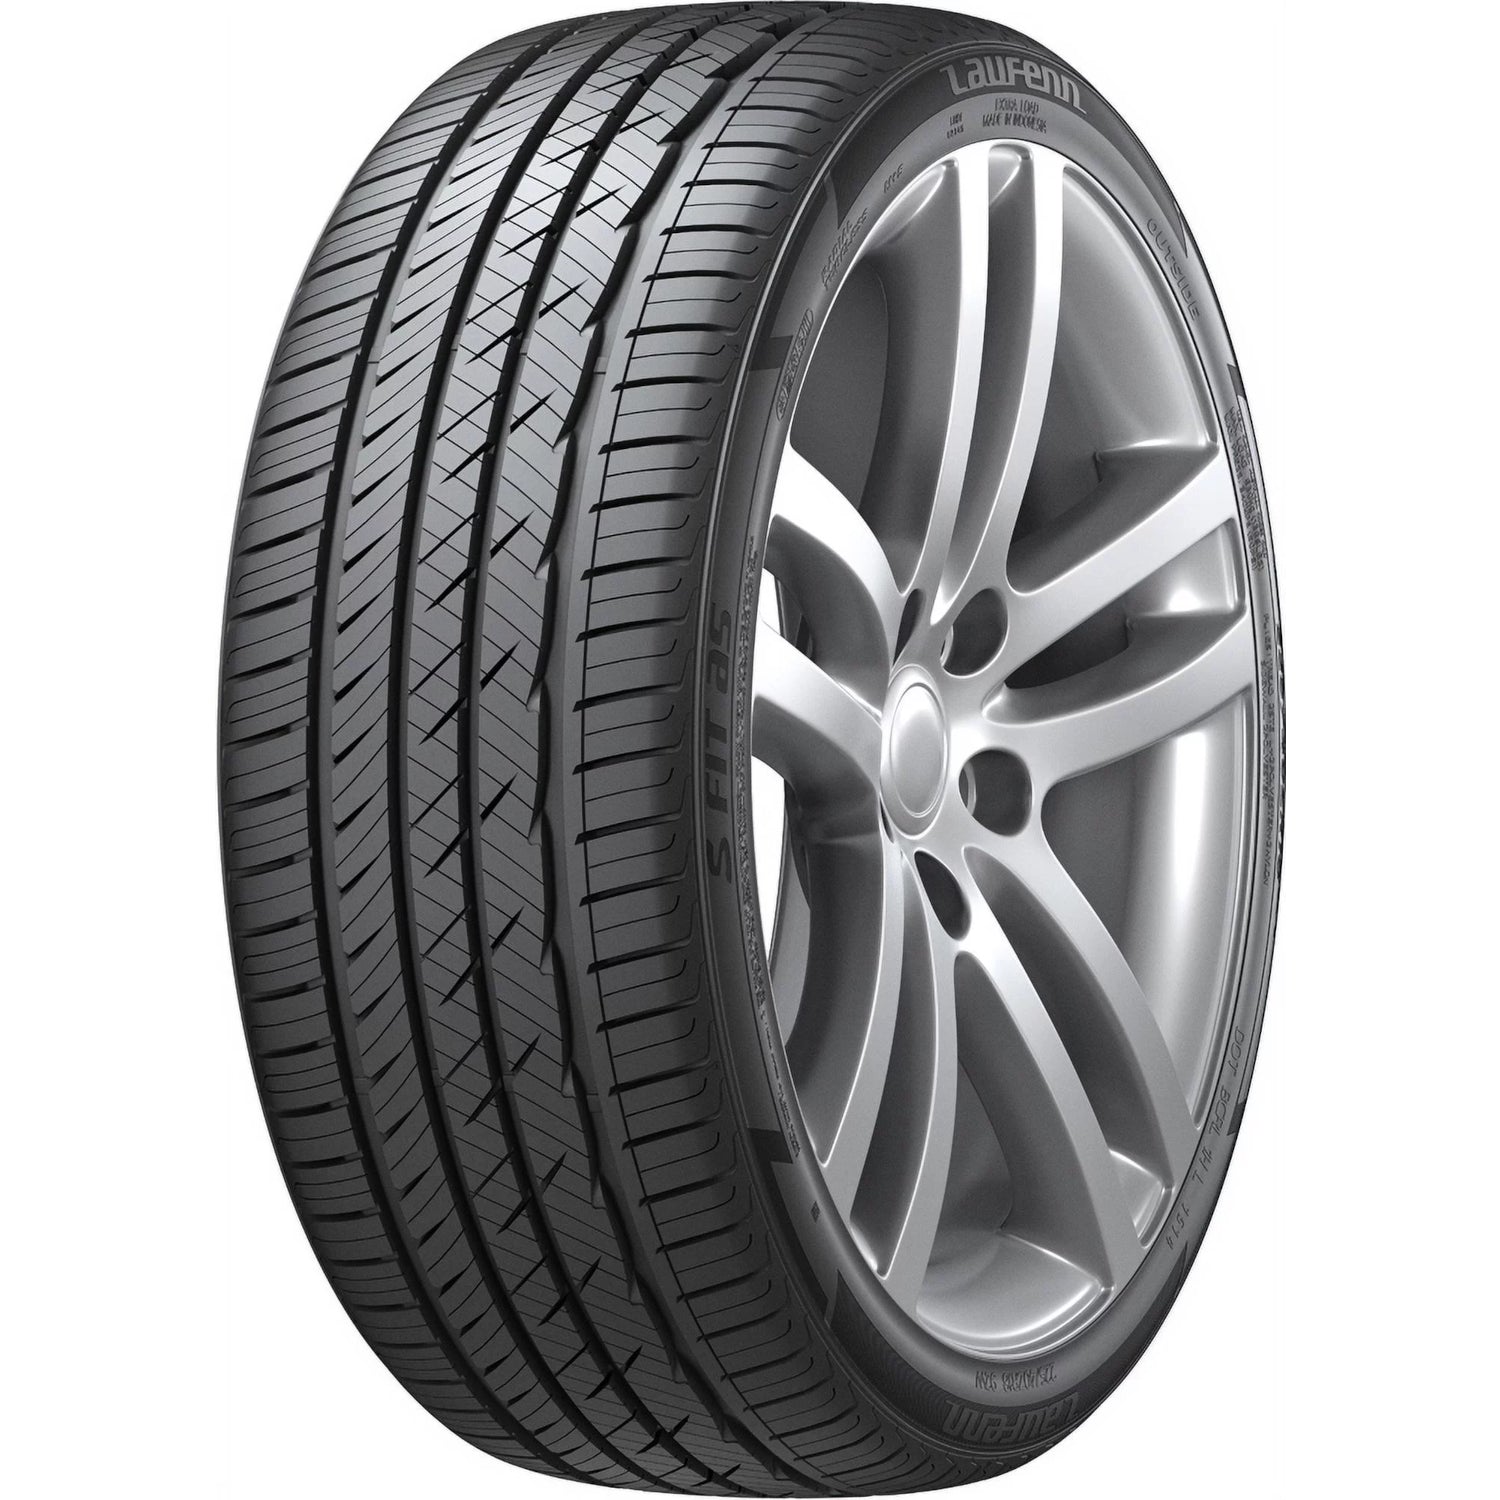 LAUFENN S FIT AS 245/40ZR17 (24.7X9.7R 17) Tires